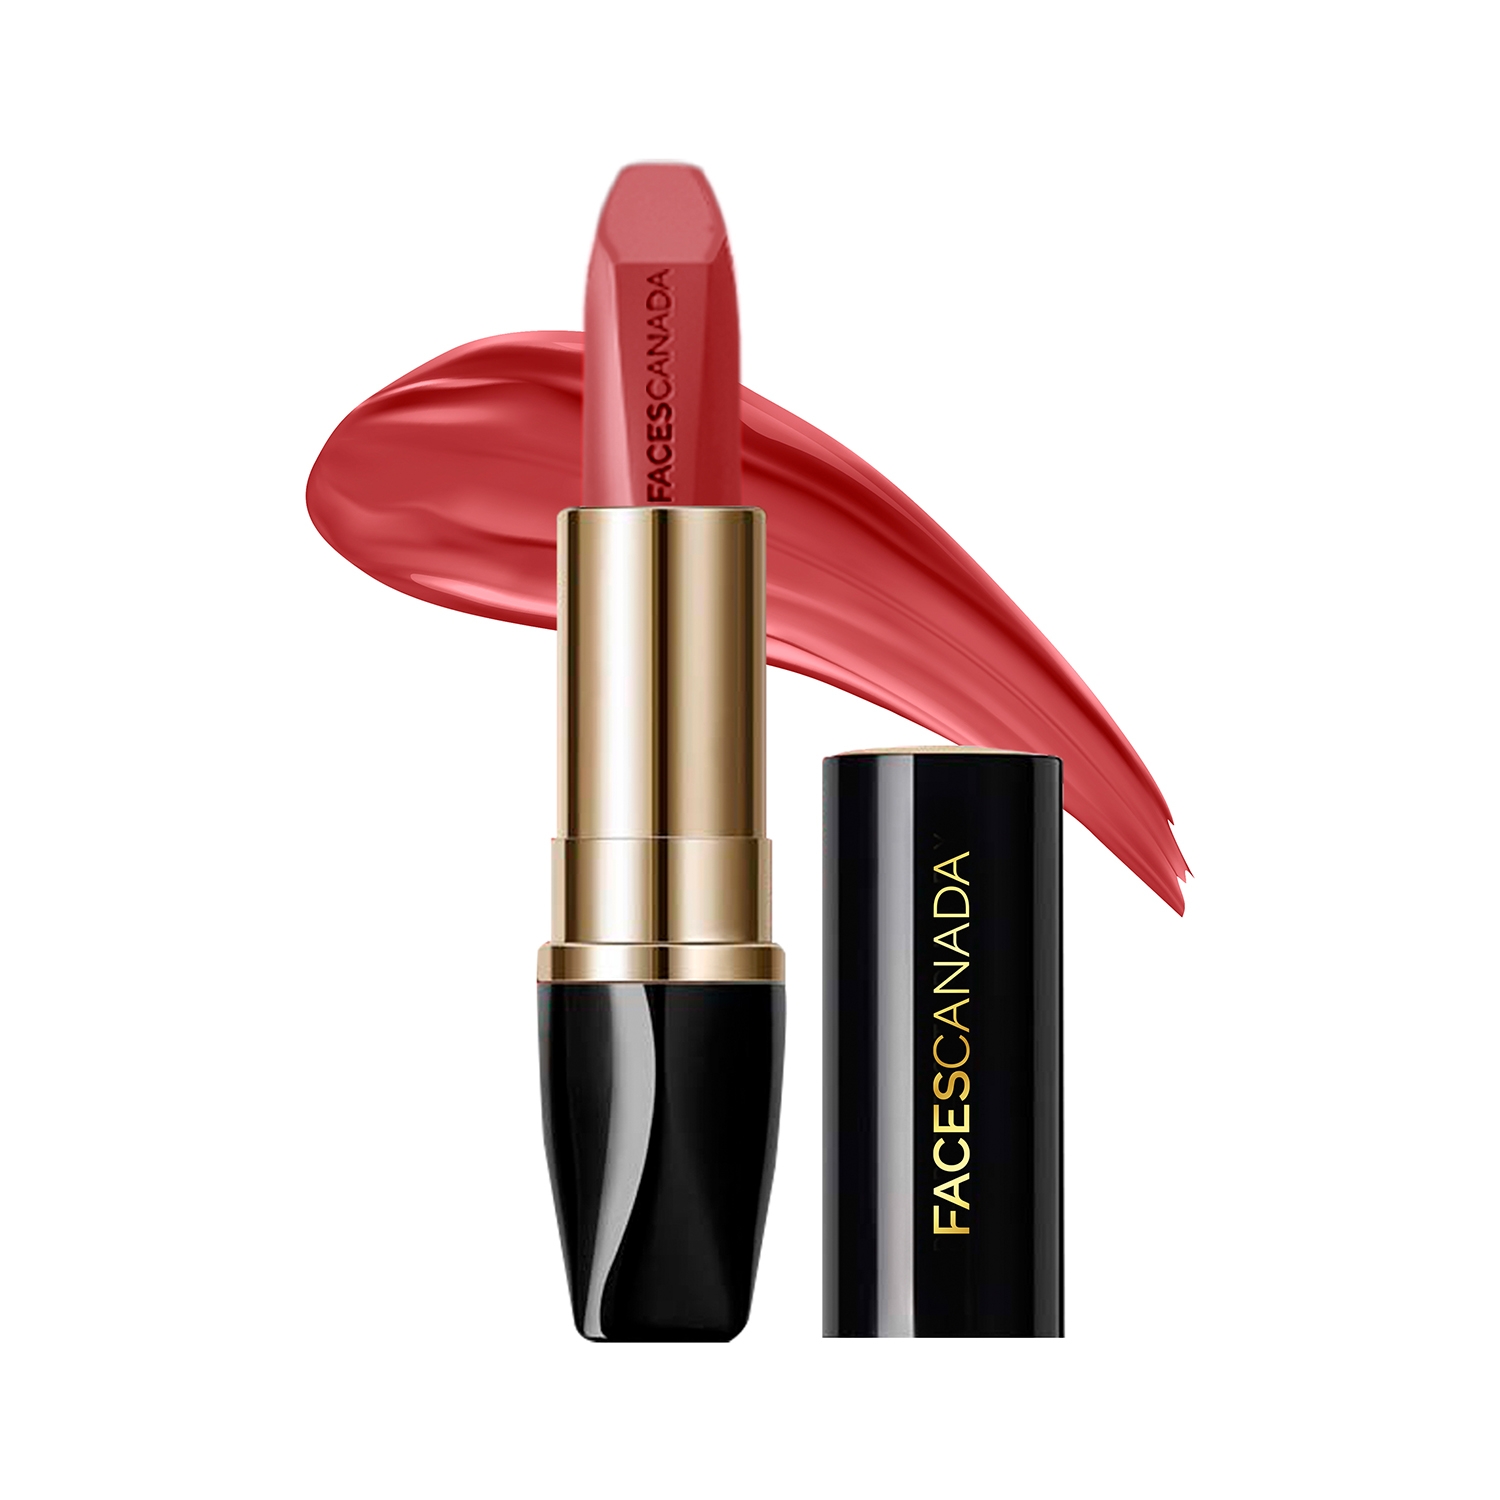 Faces Canada | Faces Canada Matte Addiction Lipstick 9HR Stay HD Finish Intense Color - Expressive Peach (3.7g)